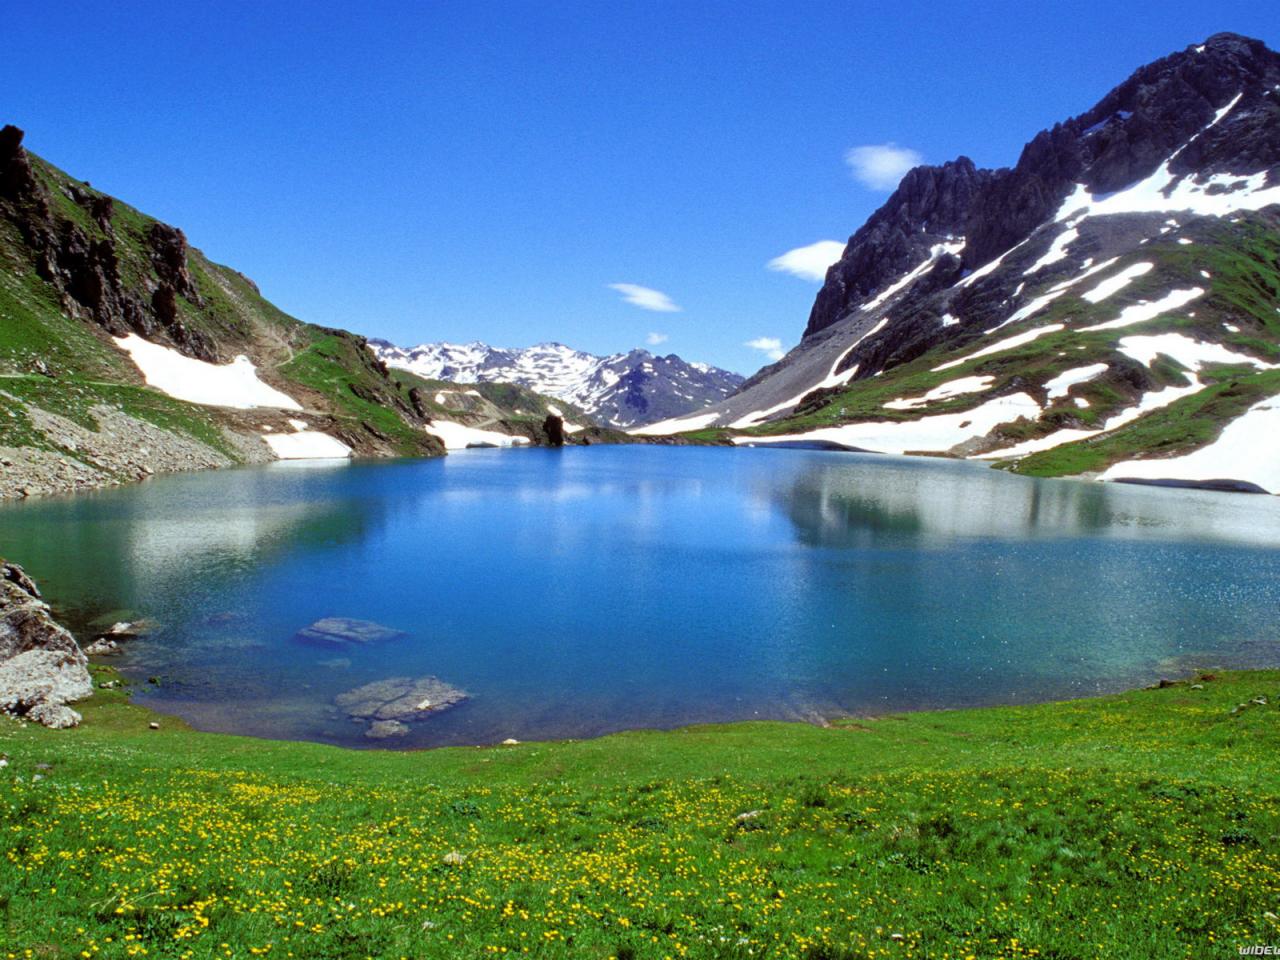 обои Озеро в горах фото